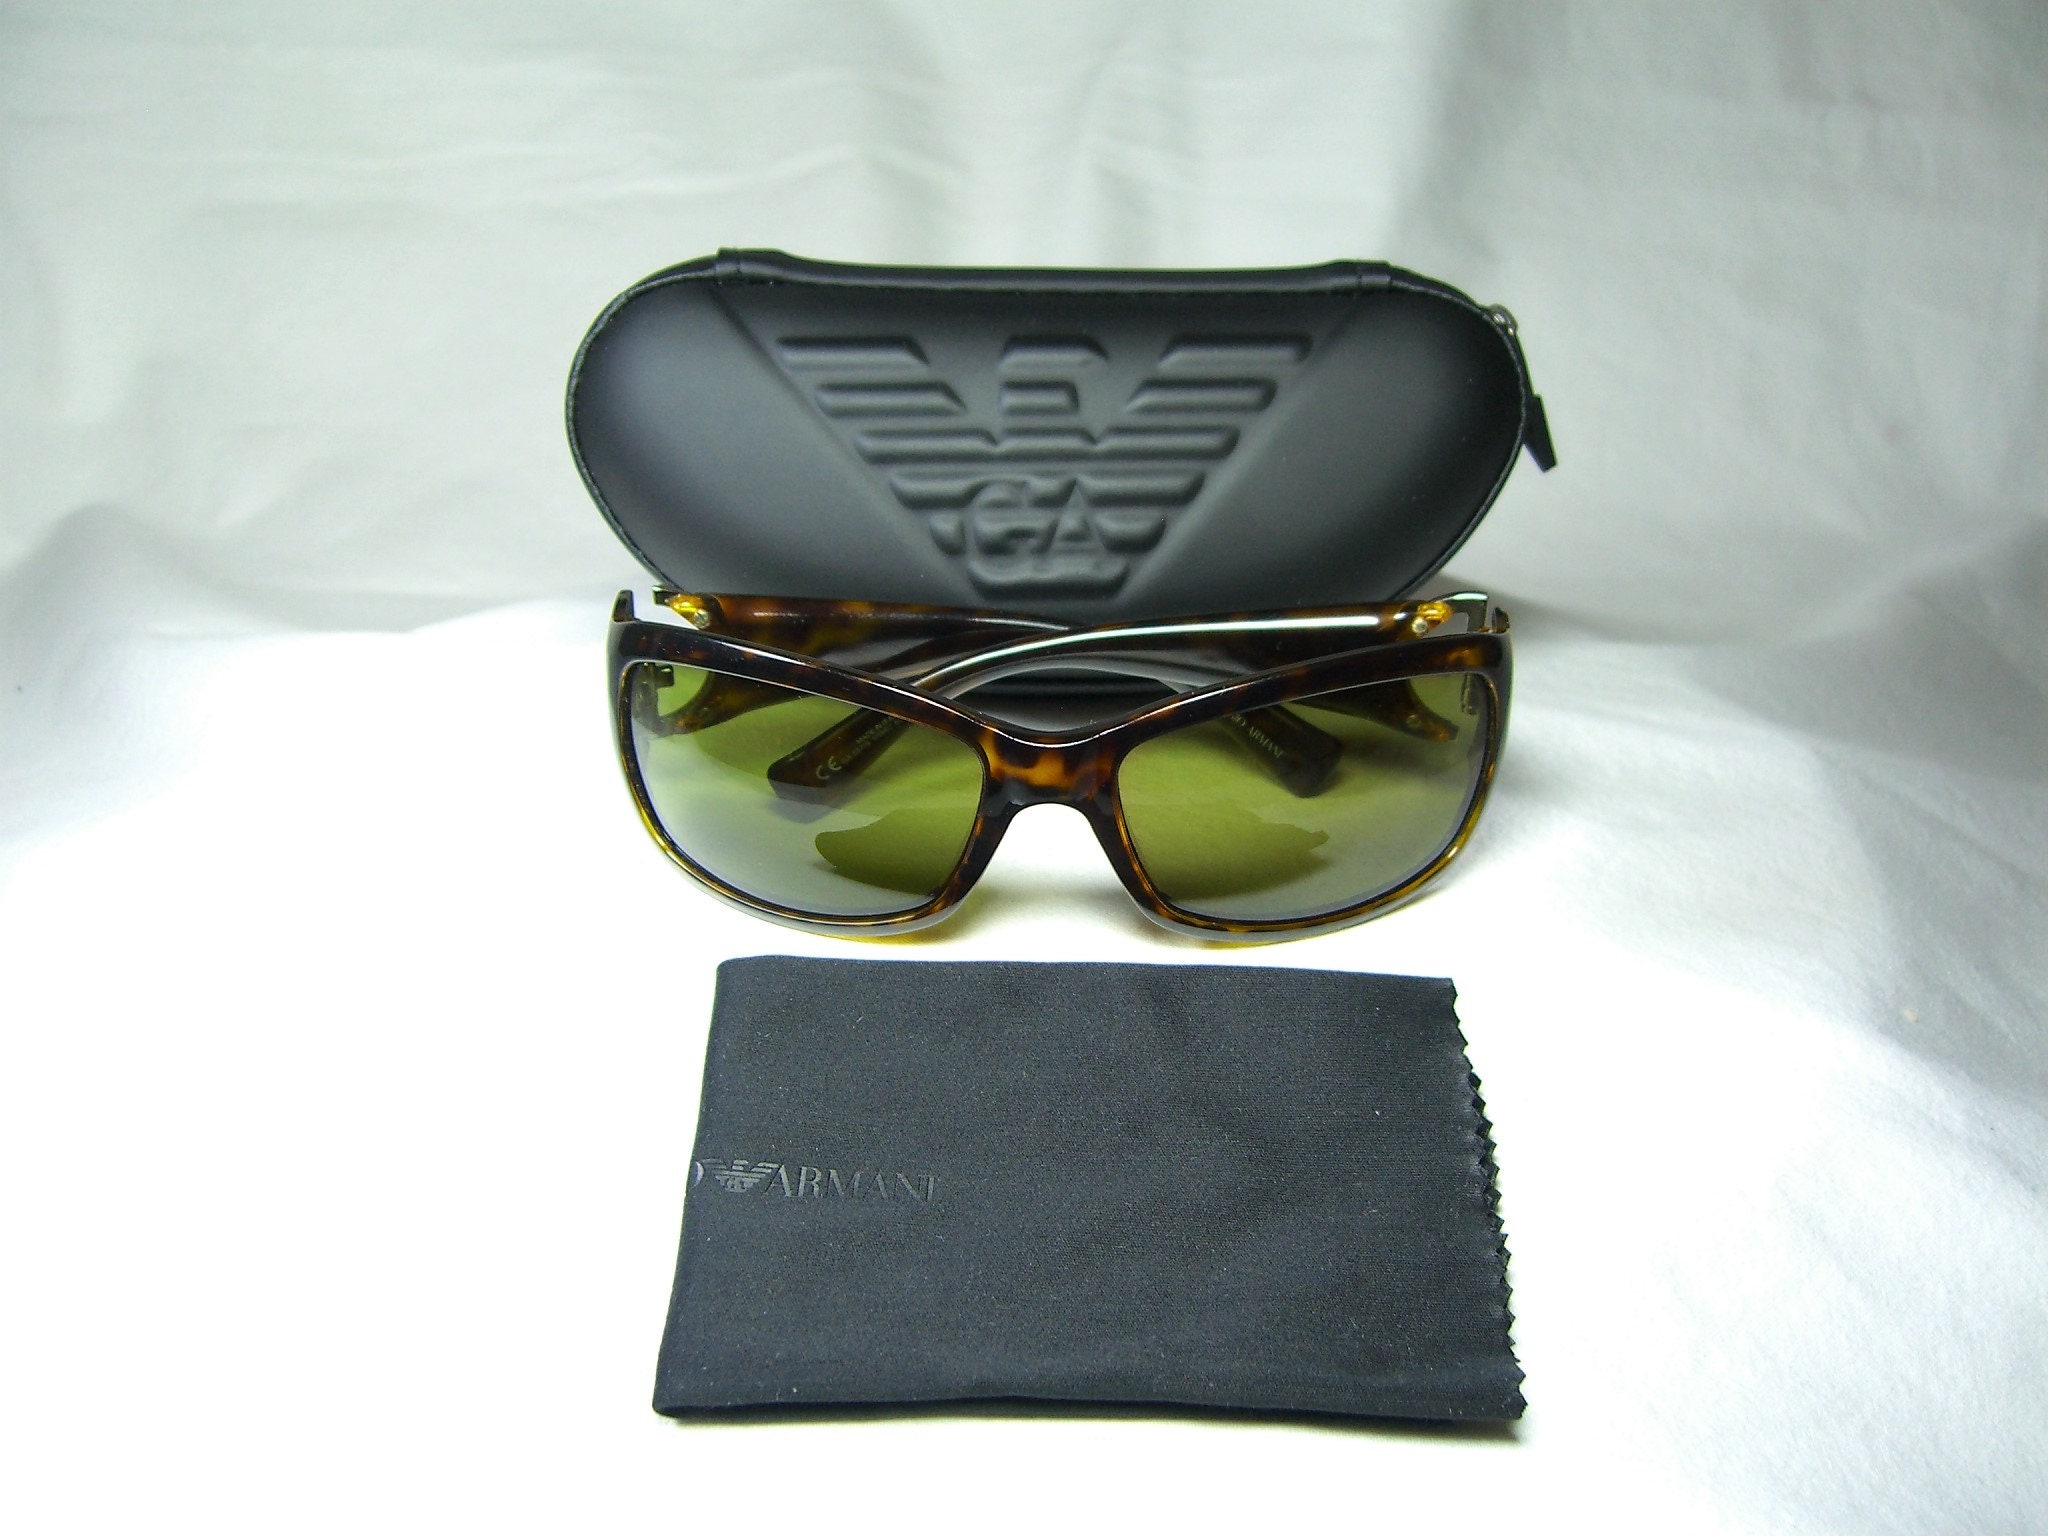 Giorgio Armani PM 1805 Clip-On Vintage Sunglasses including Case